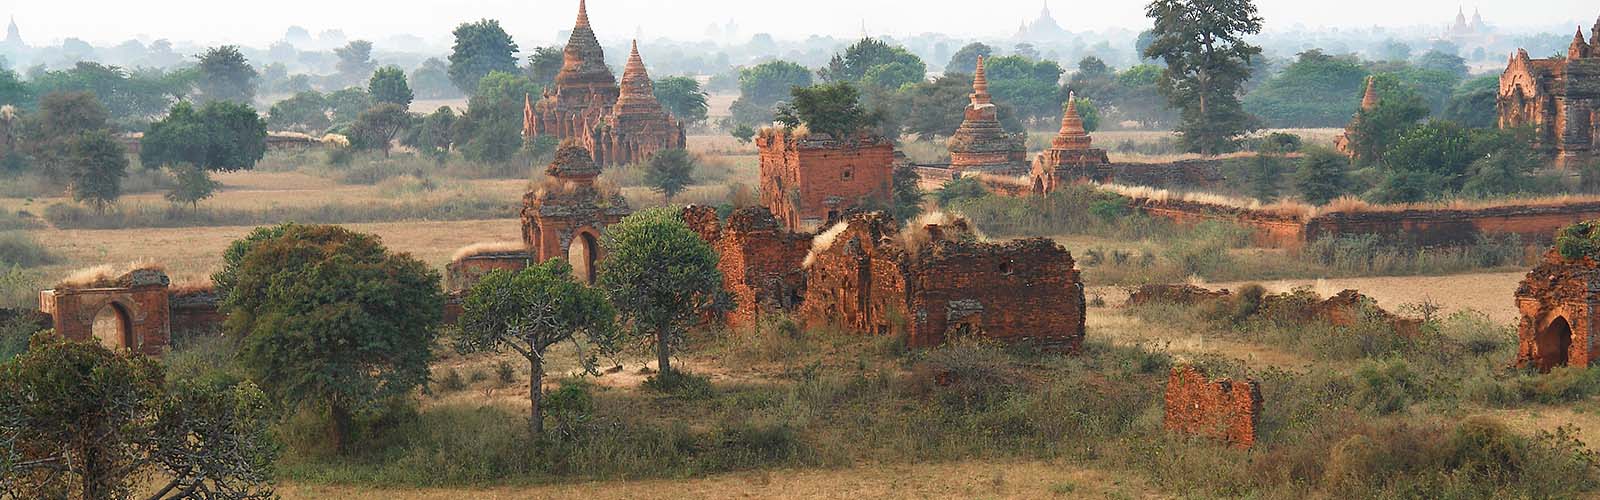 Voyage Birmanie - Voyage sur mesure en Birmanie avec une agence locale